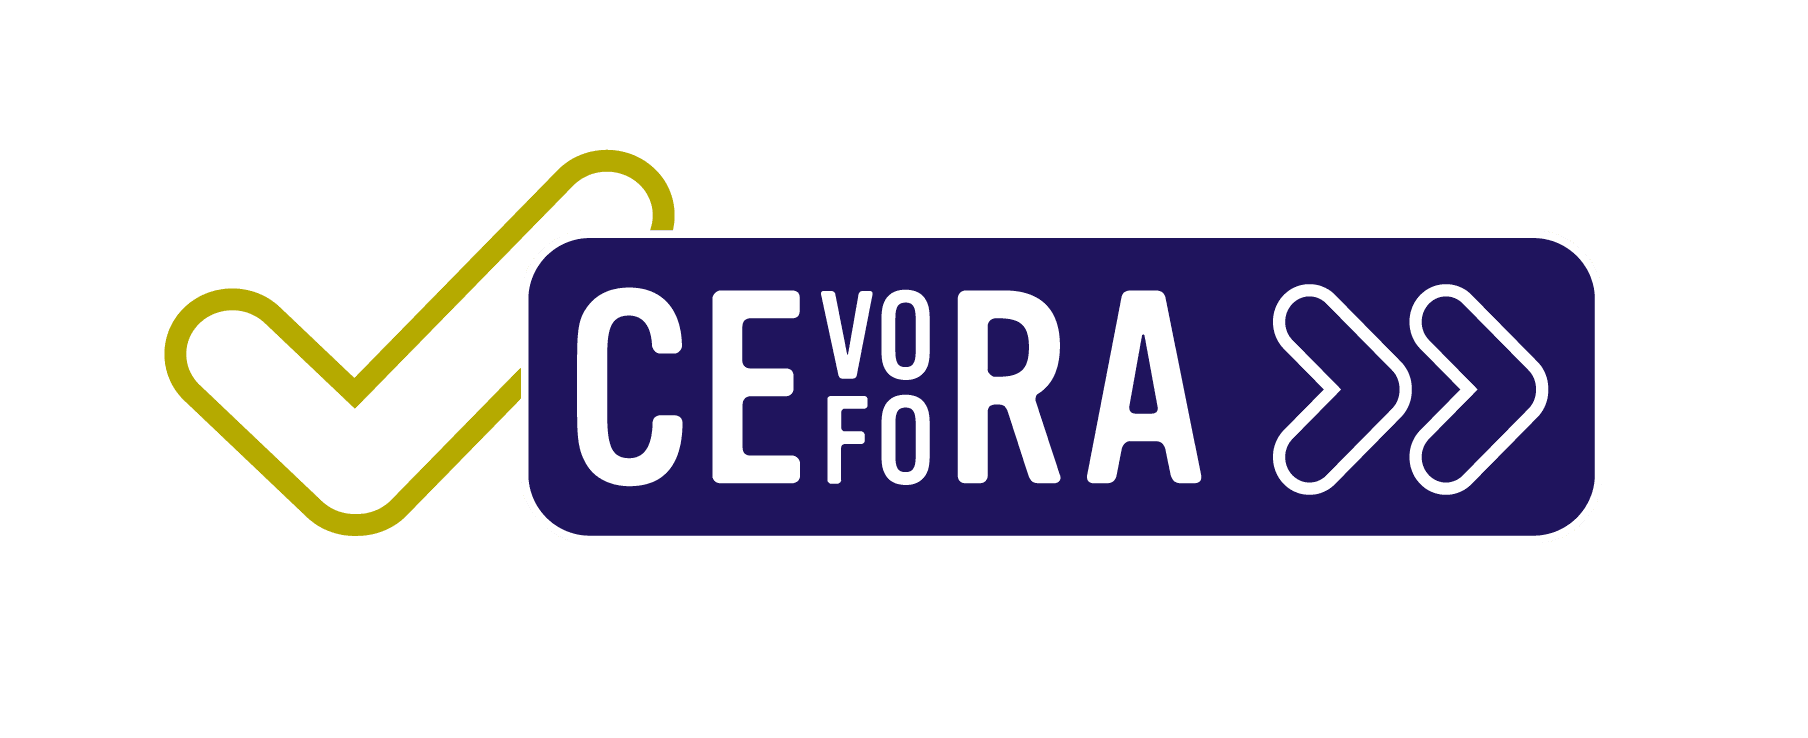 Cevora voor partners